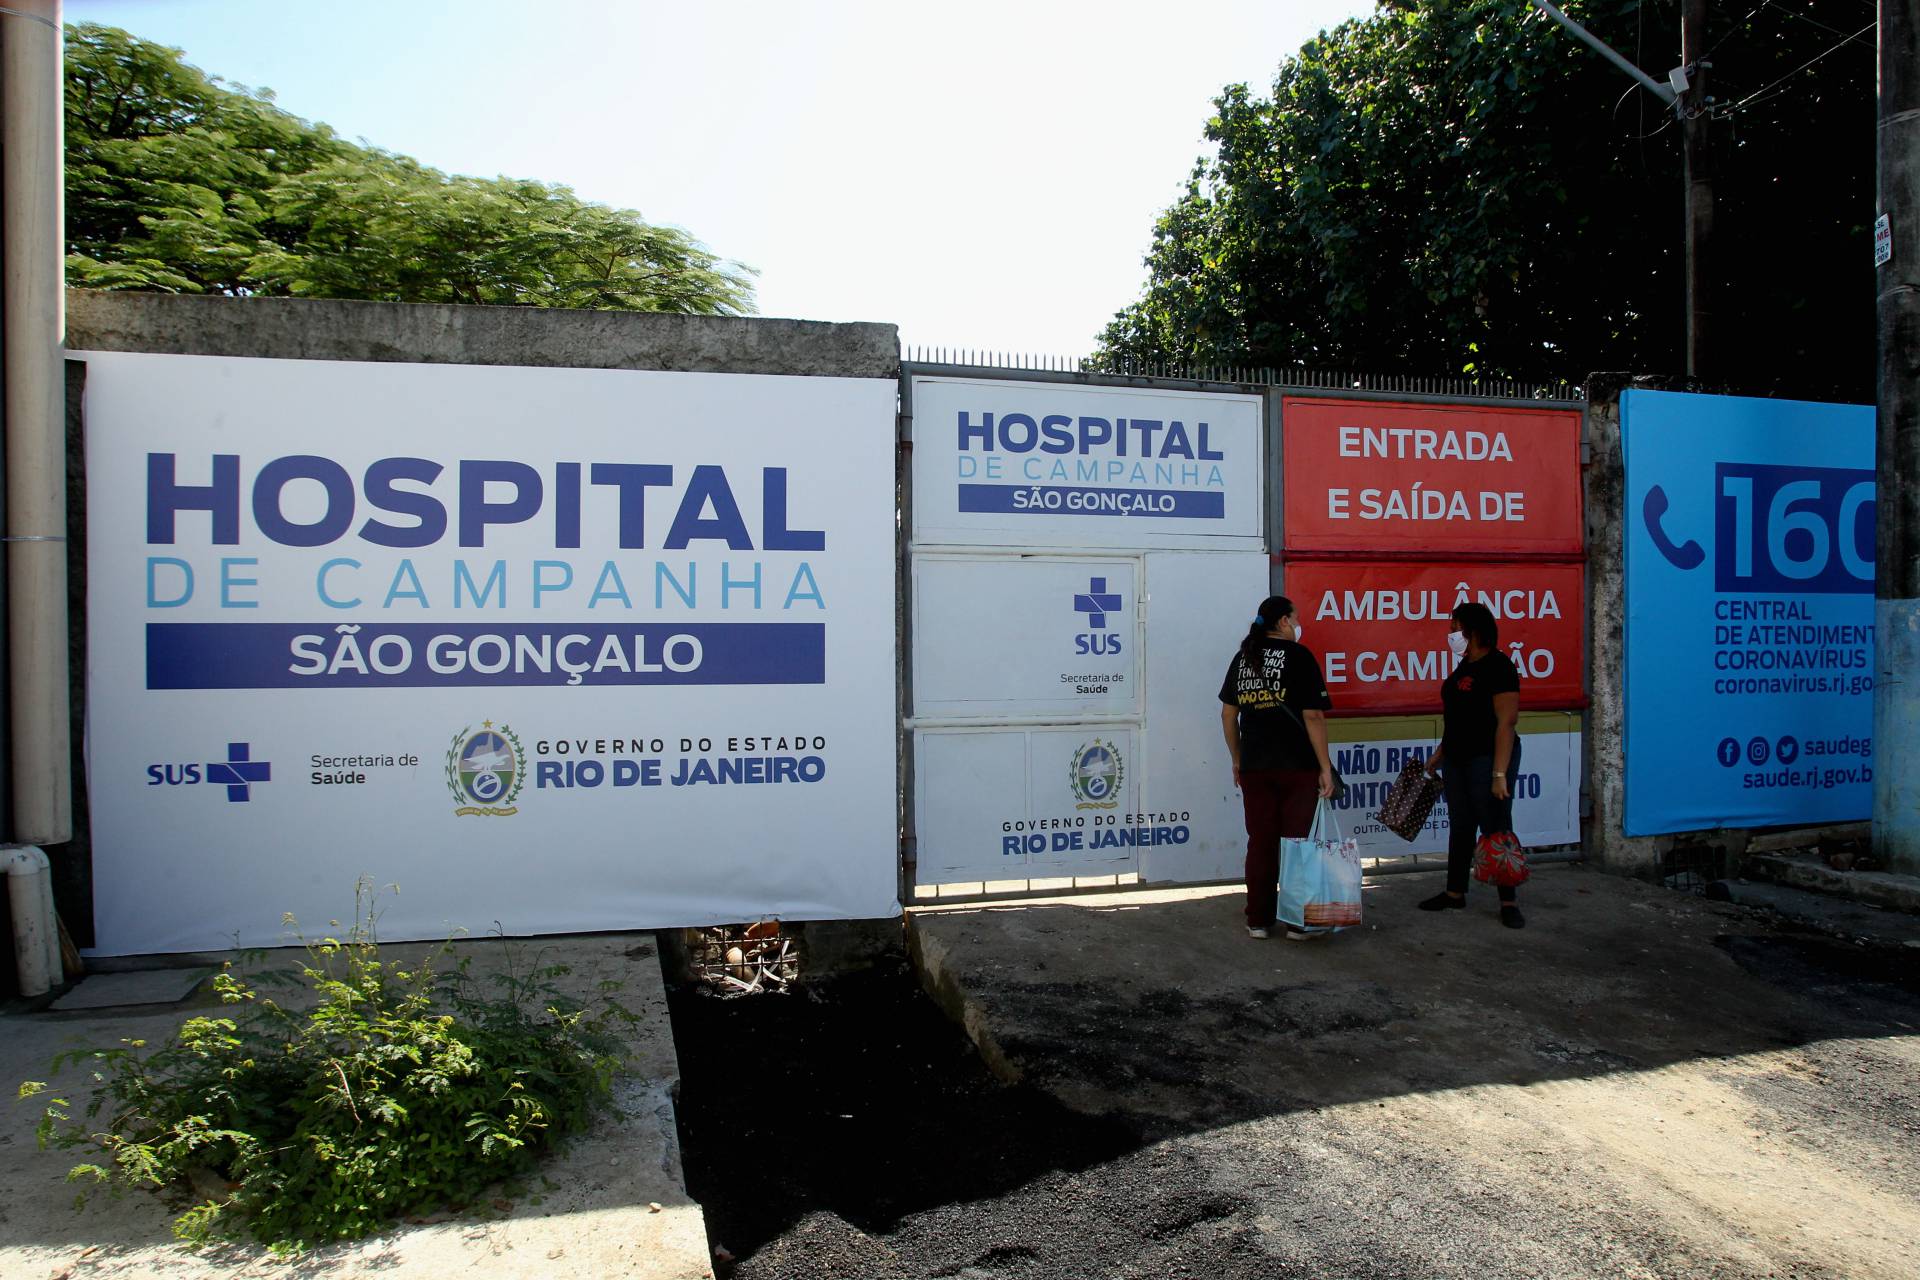 Նենգափոխված մեկնաբանություններ կորոնավիրուսի և բրազիլական դատարկ հիվանդանոցների մասին հայ օգտատիրոջ կողմից